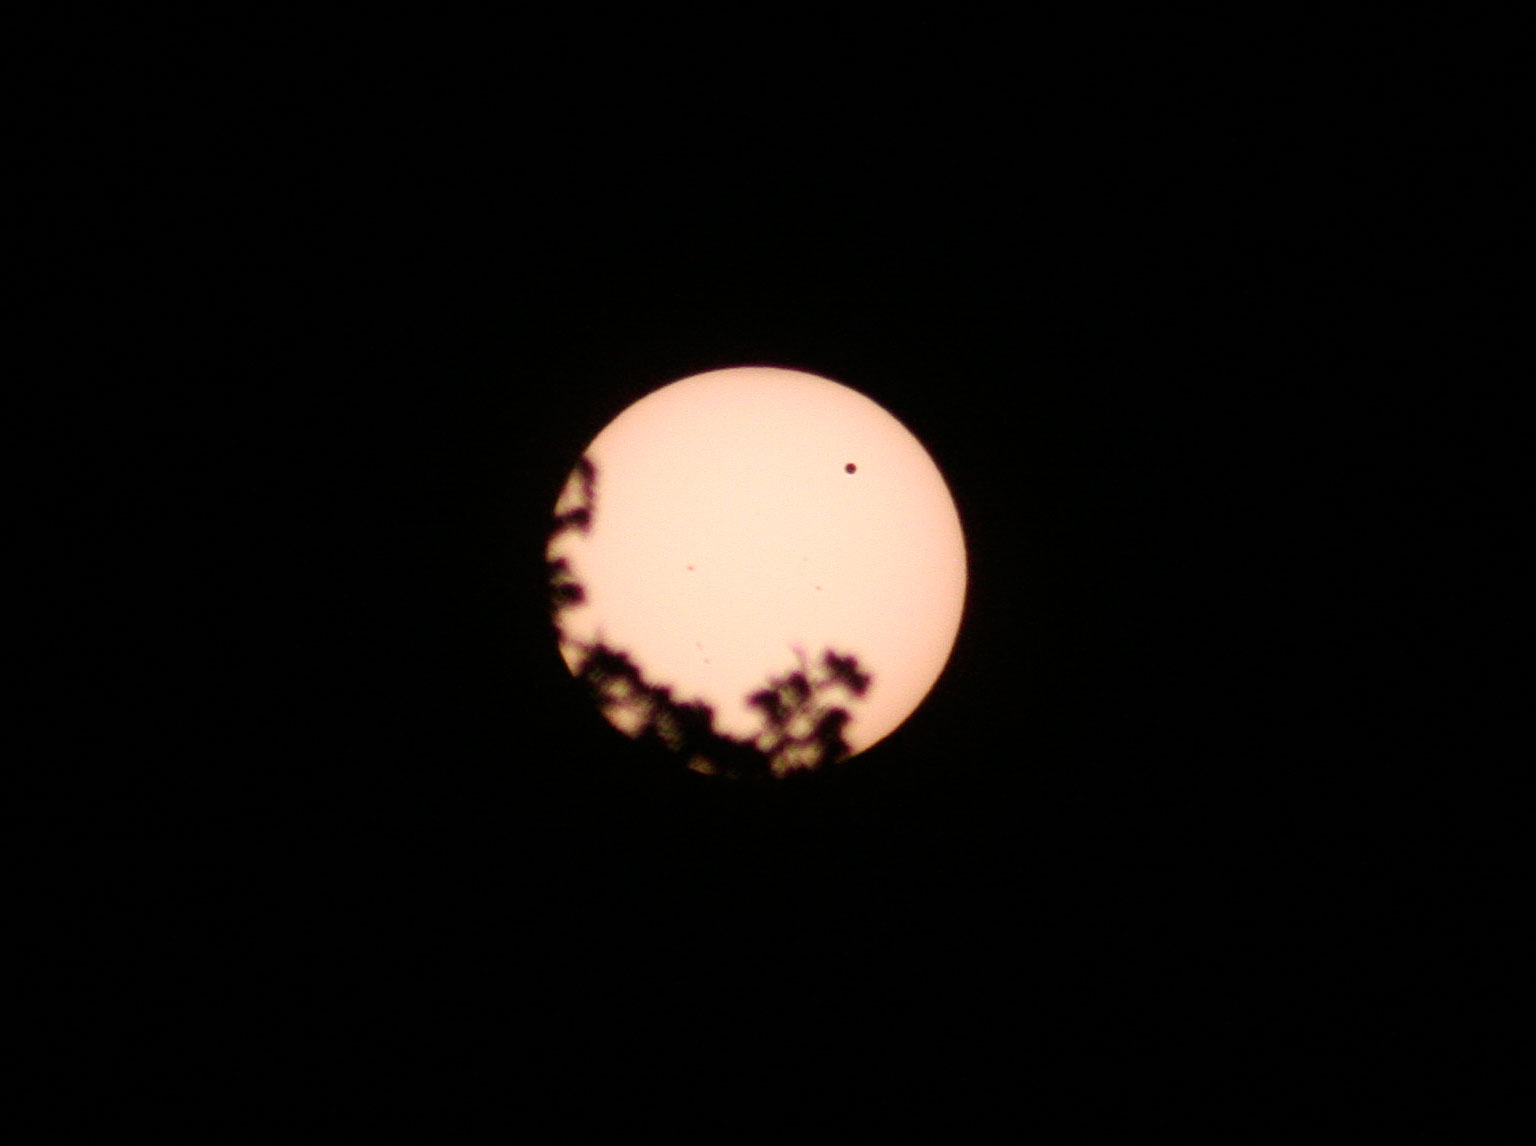 Transit of Venus at sunset